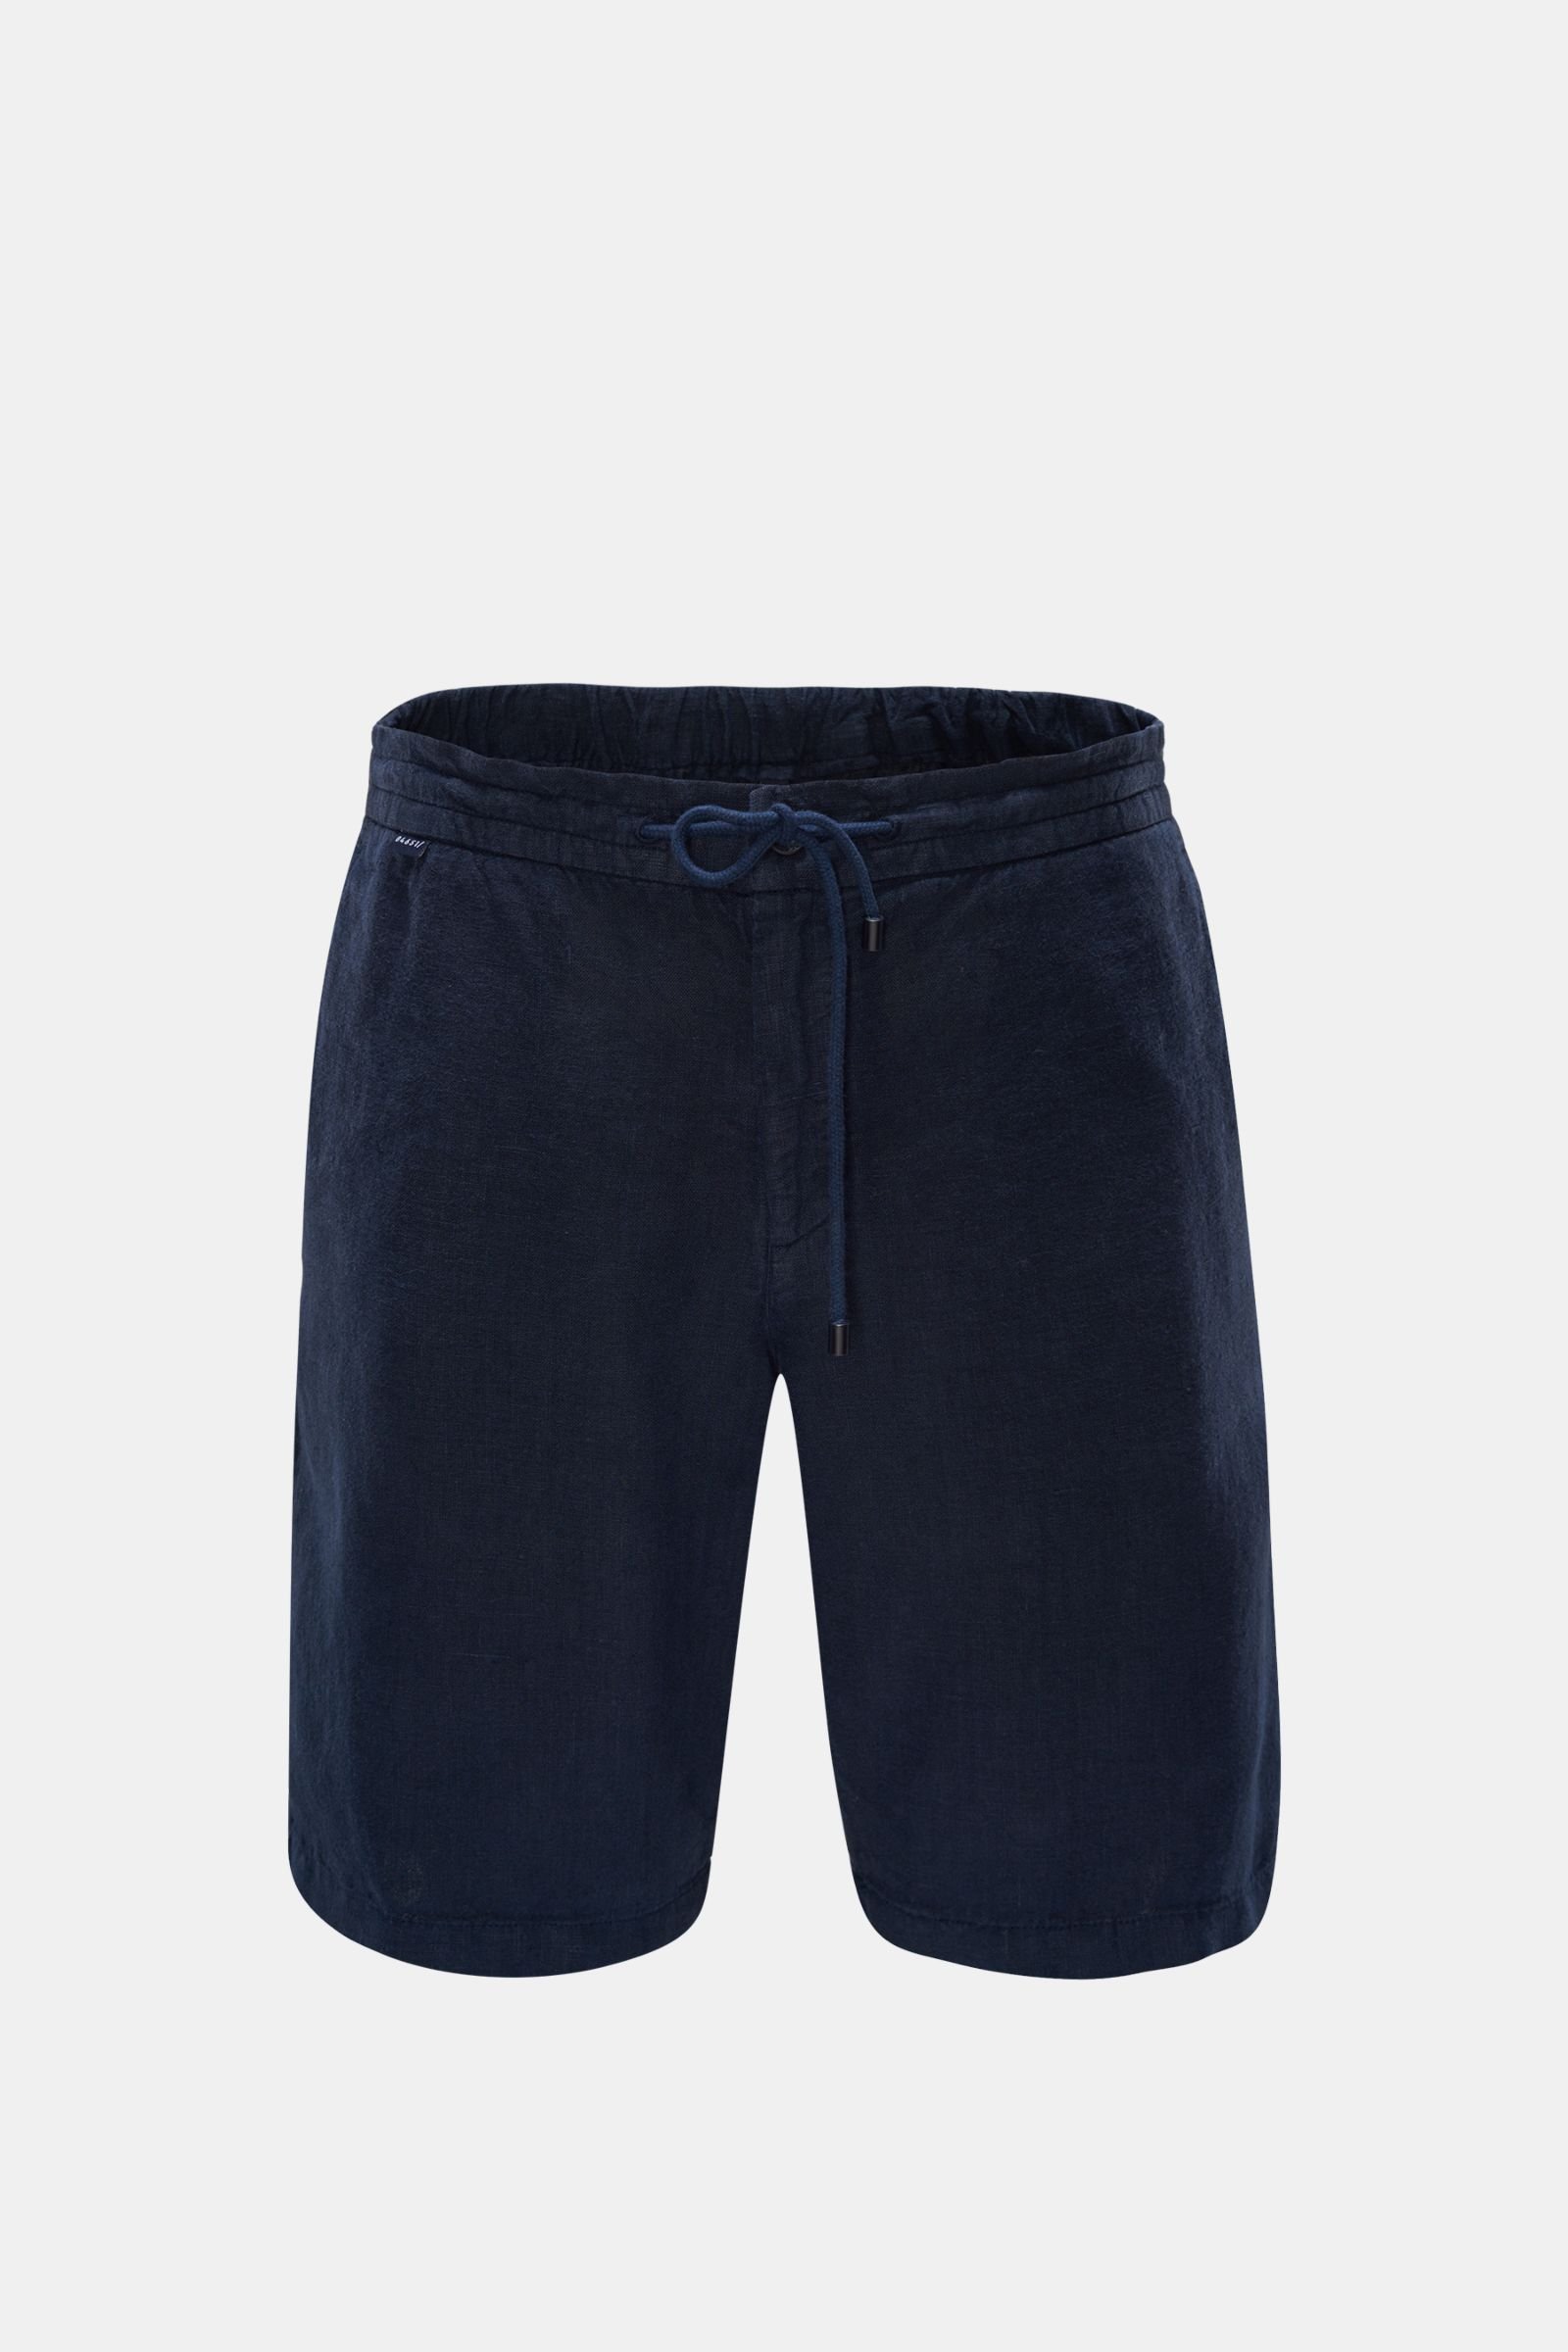 Linen bermuda shorts navy